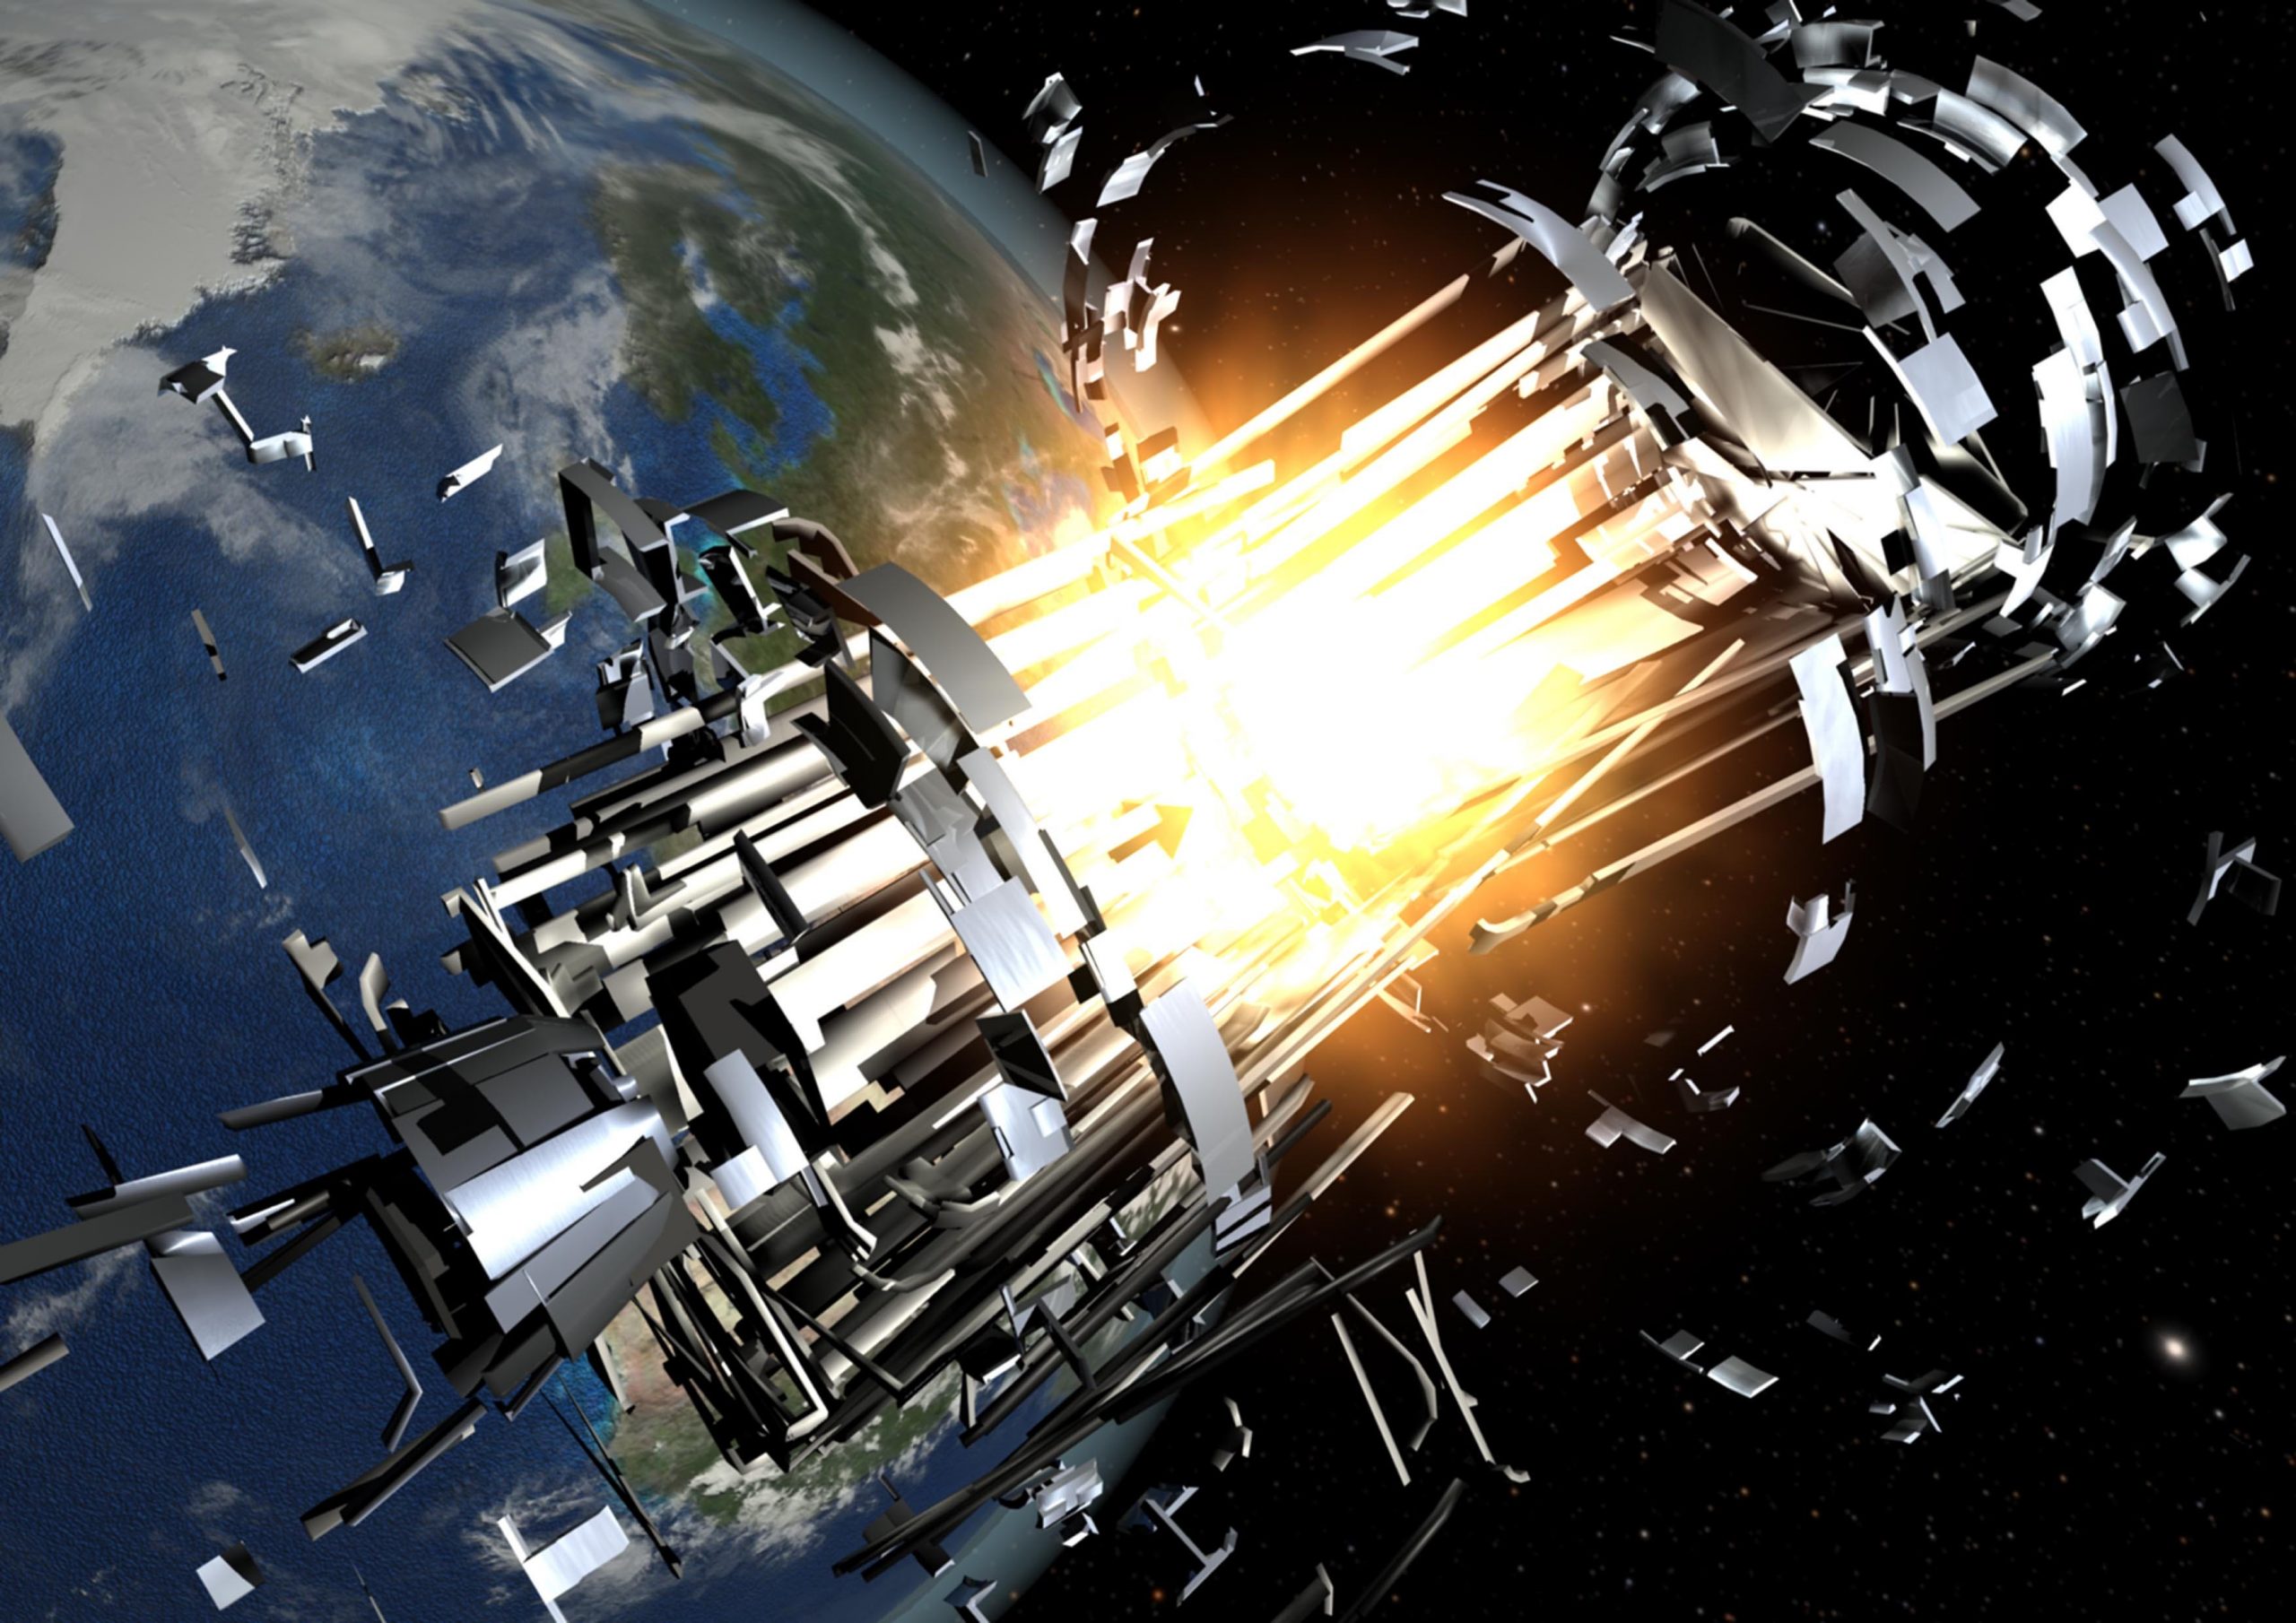 rocket body explosions illustration space debris junk esa